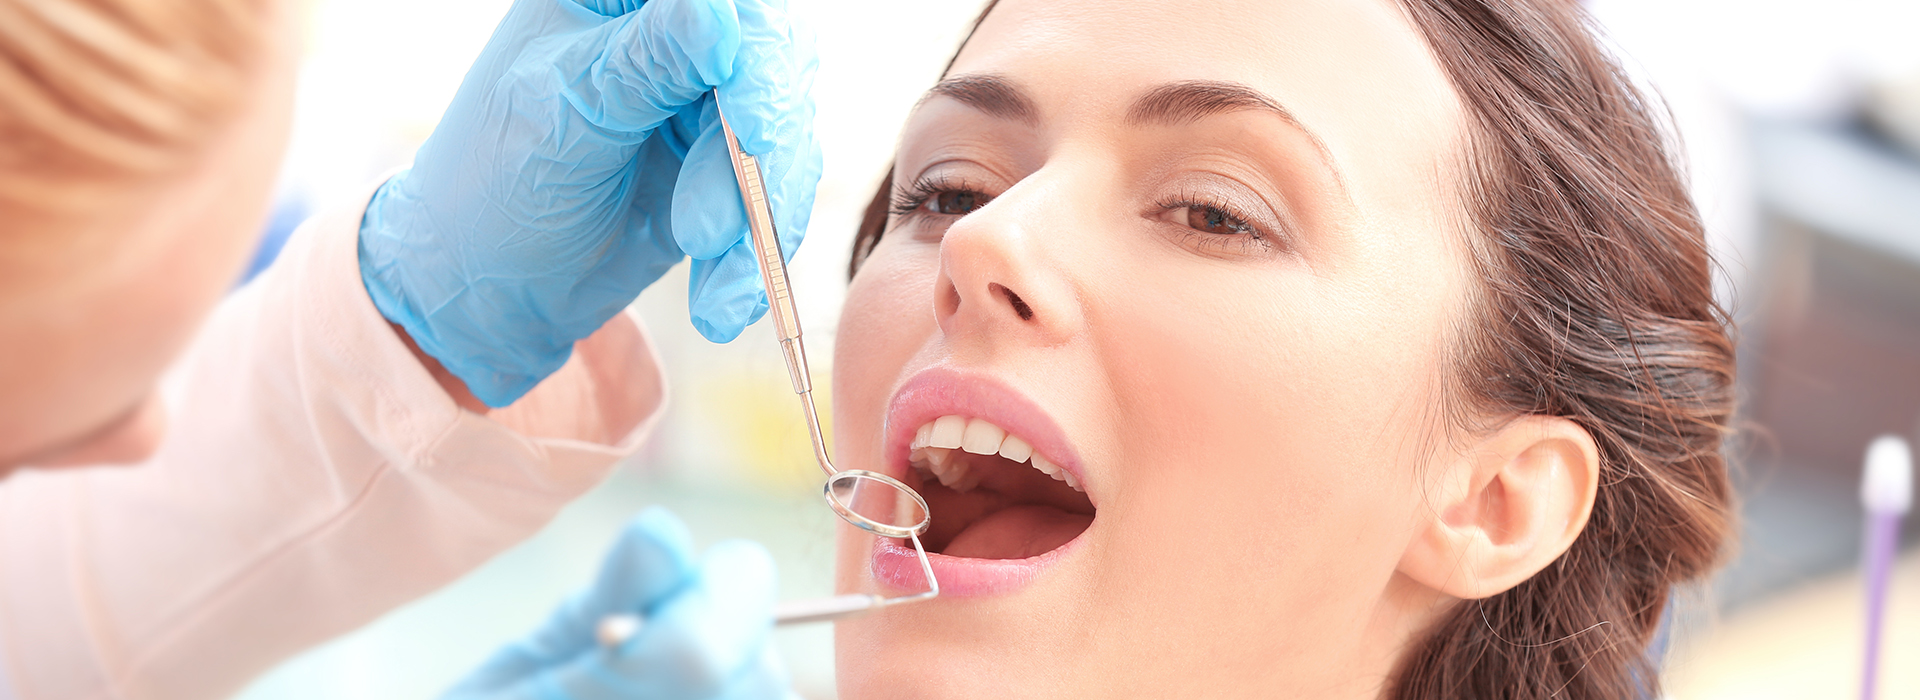 iSmile Dental | Dental Bridges, Dermal Fillers and Dental Fillings